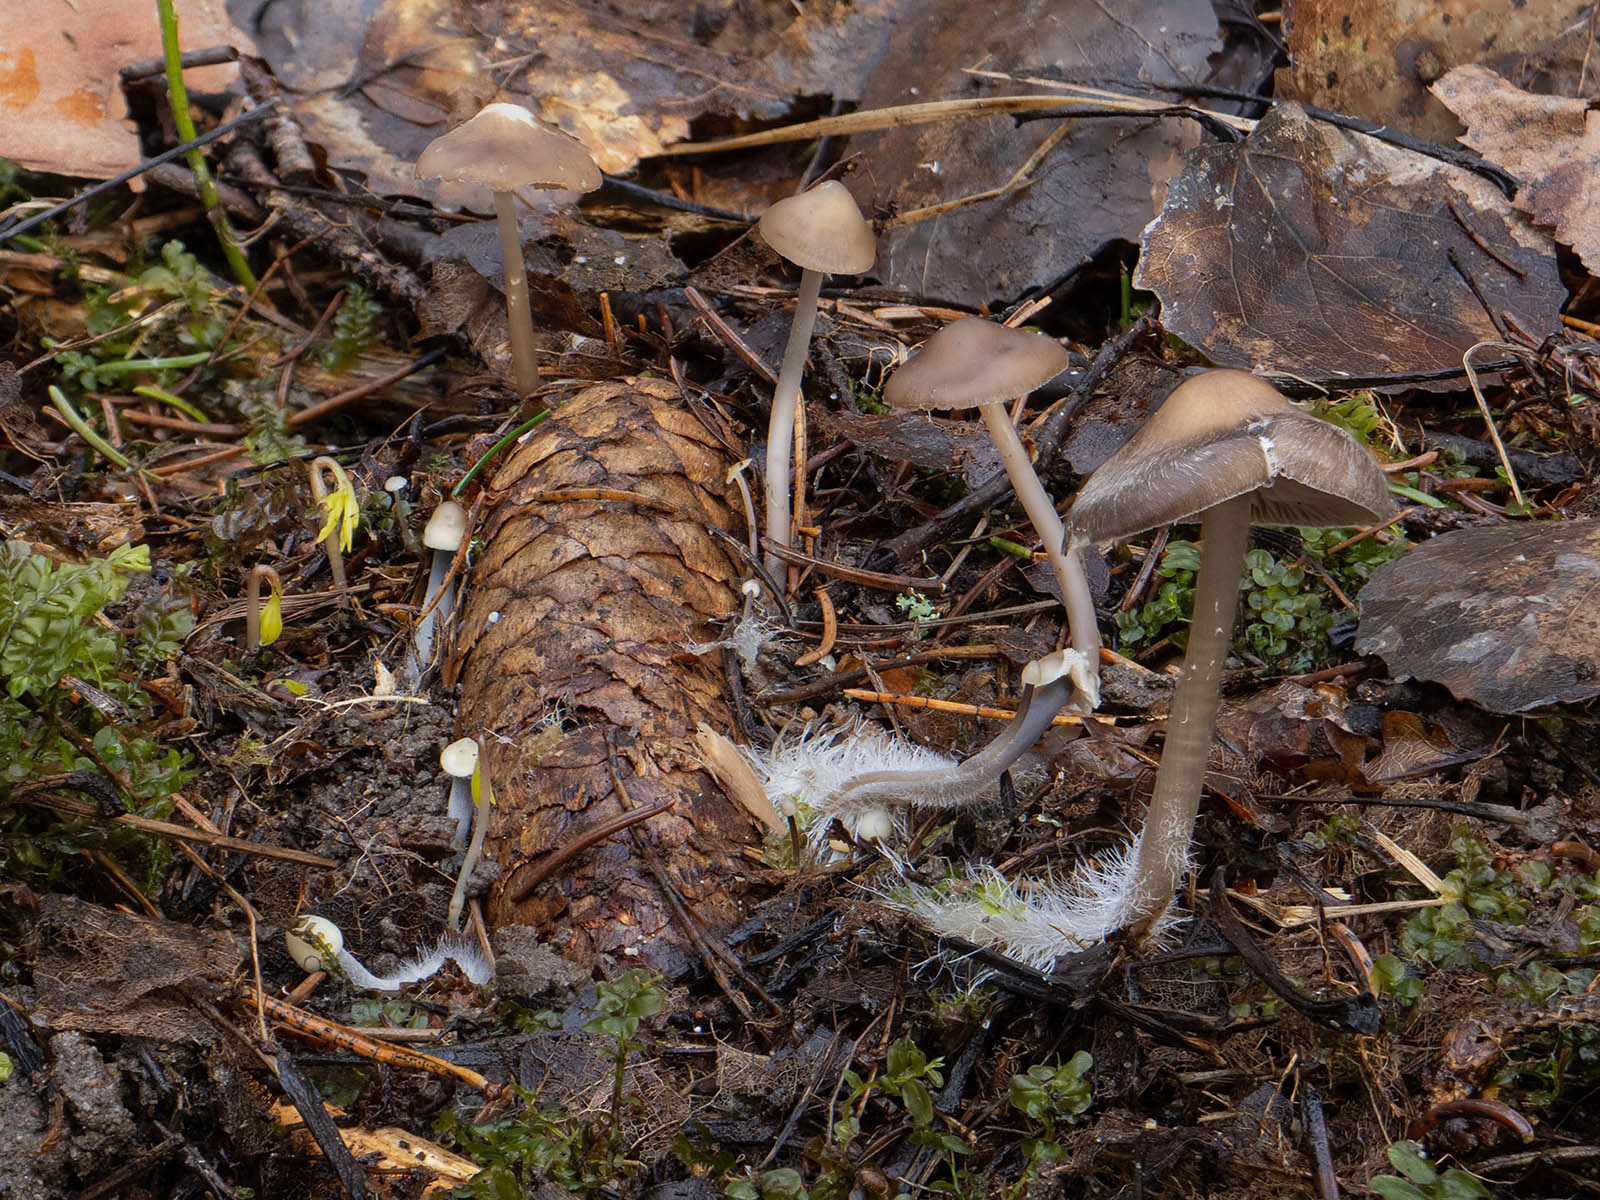 Мицена шишколюбивая (Mycena plumipes - принятое в Скандинавии имя для Mycena strobilicola) на еловых шишках в природном парке G?rv?ln, Стокгольм, март 2020 года. Автор фото: Сутормина Марина